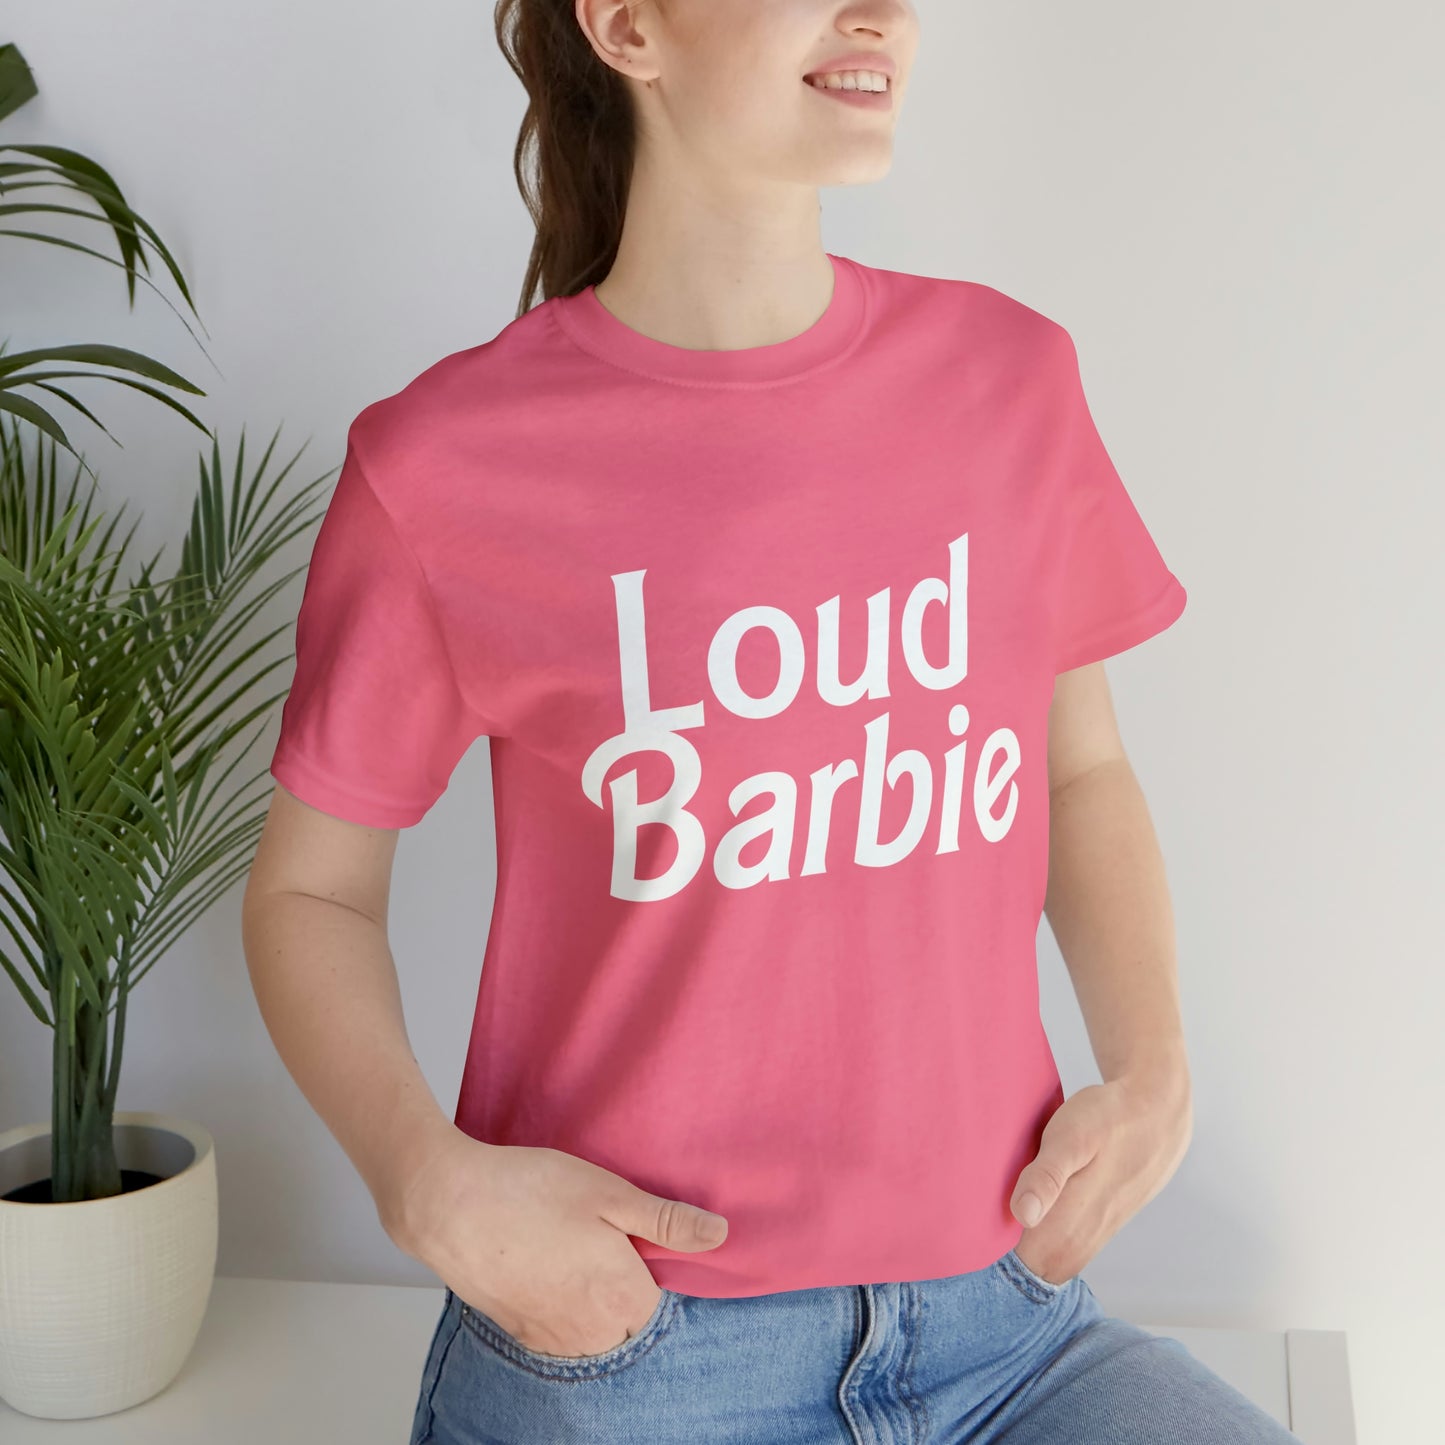 Loud Barbie